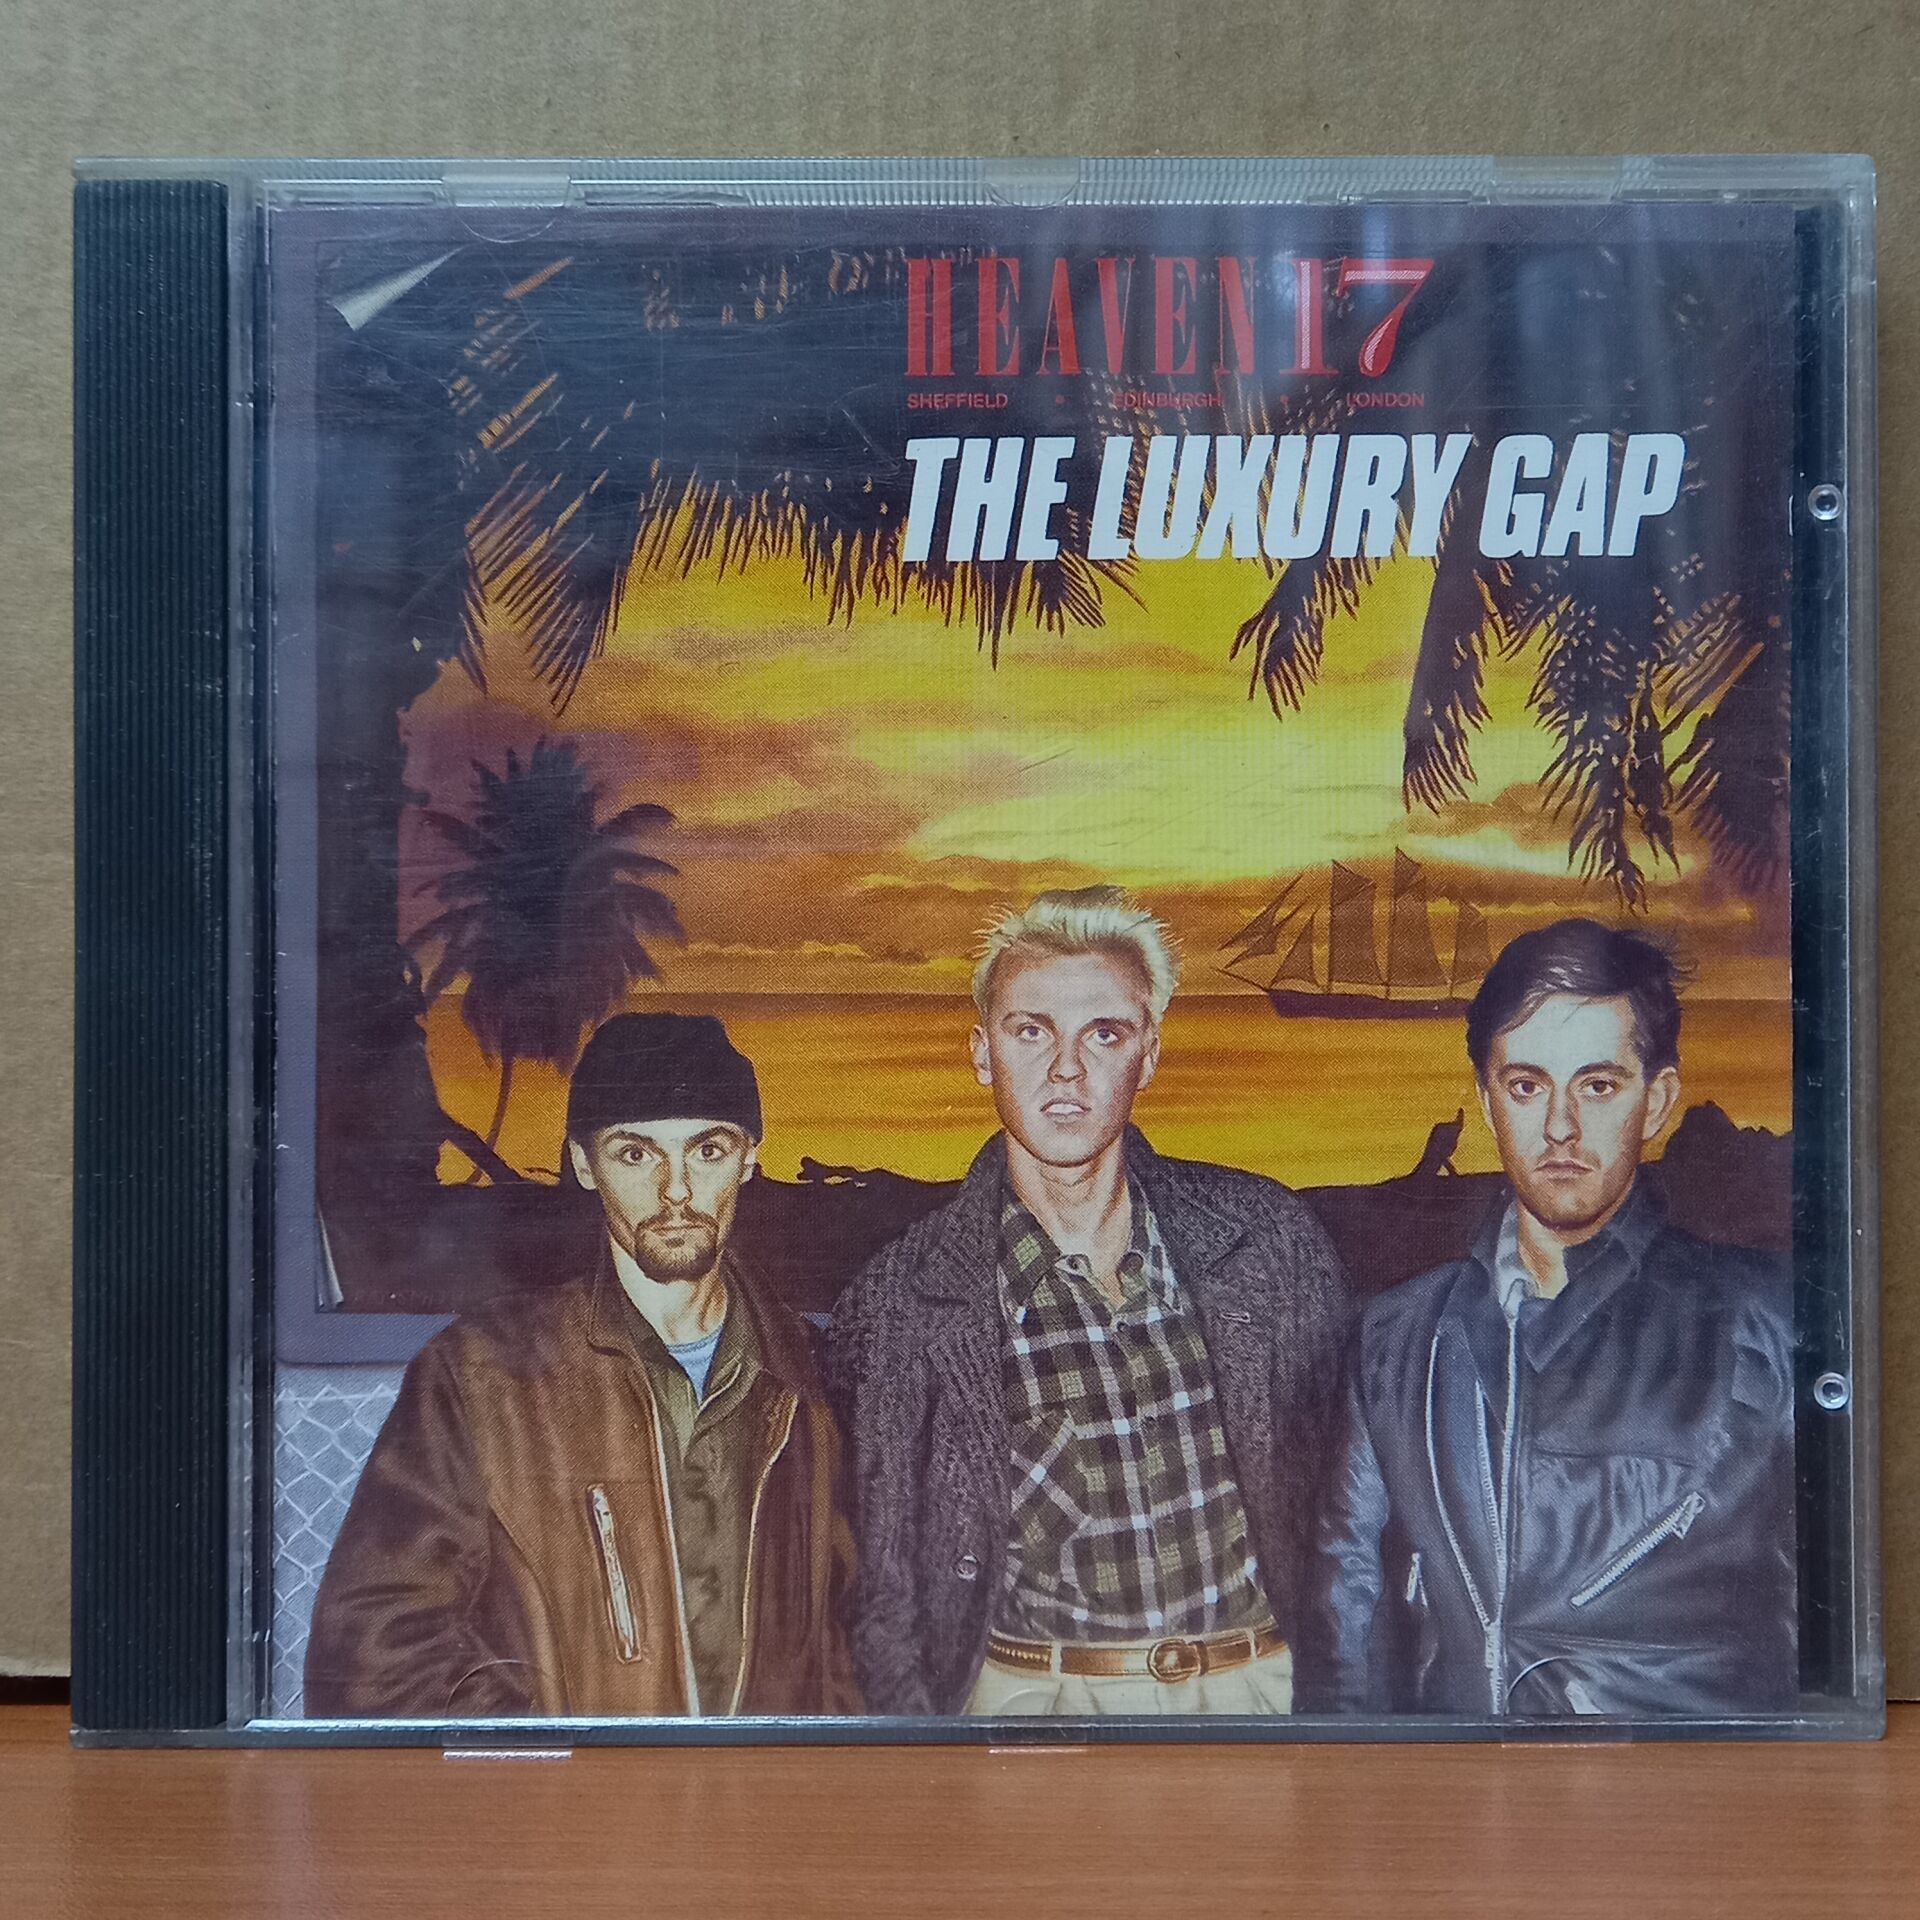 HEAVEN 17 -THE LUXURY GAP (1983) - CD 2.EL